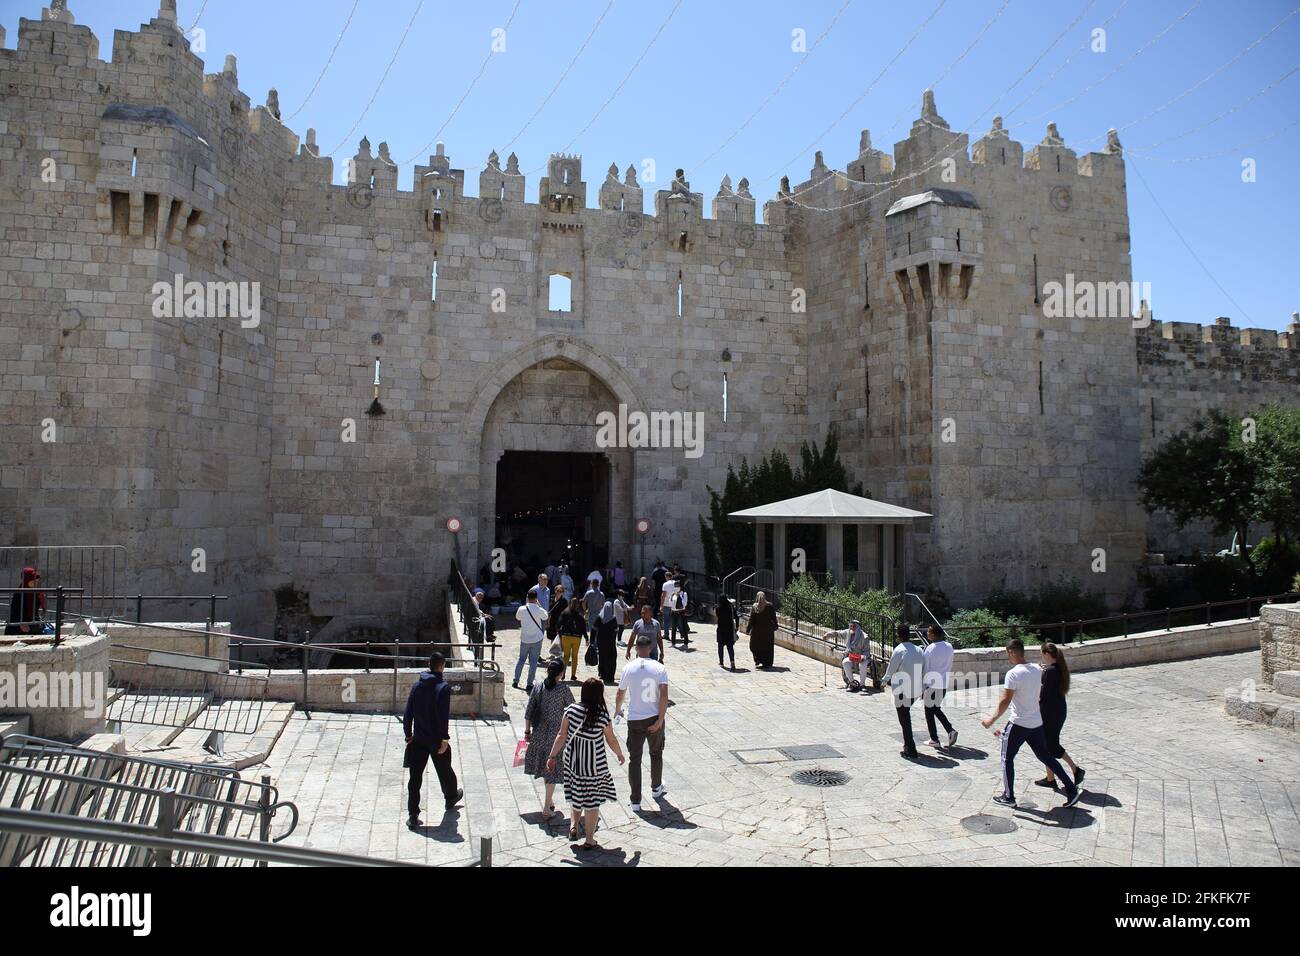 La porta di Damasco, una delle otto della città vecchia di Gerusalemme, con persone che entrano e escono dalla città fortificata. Foto Stock